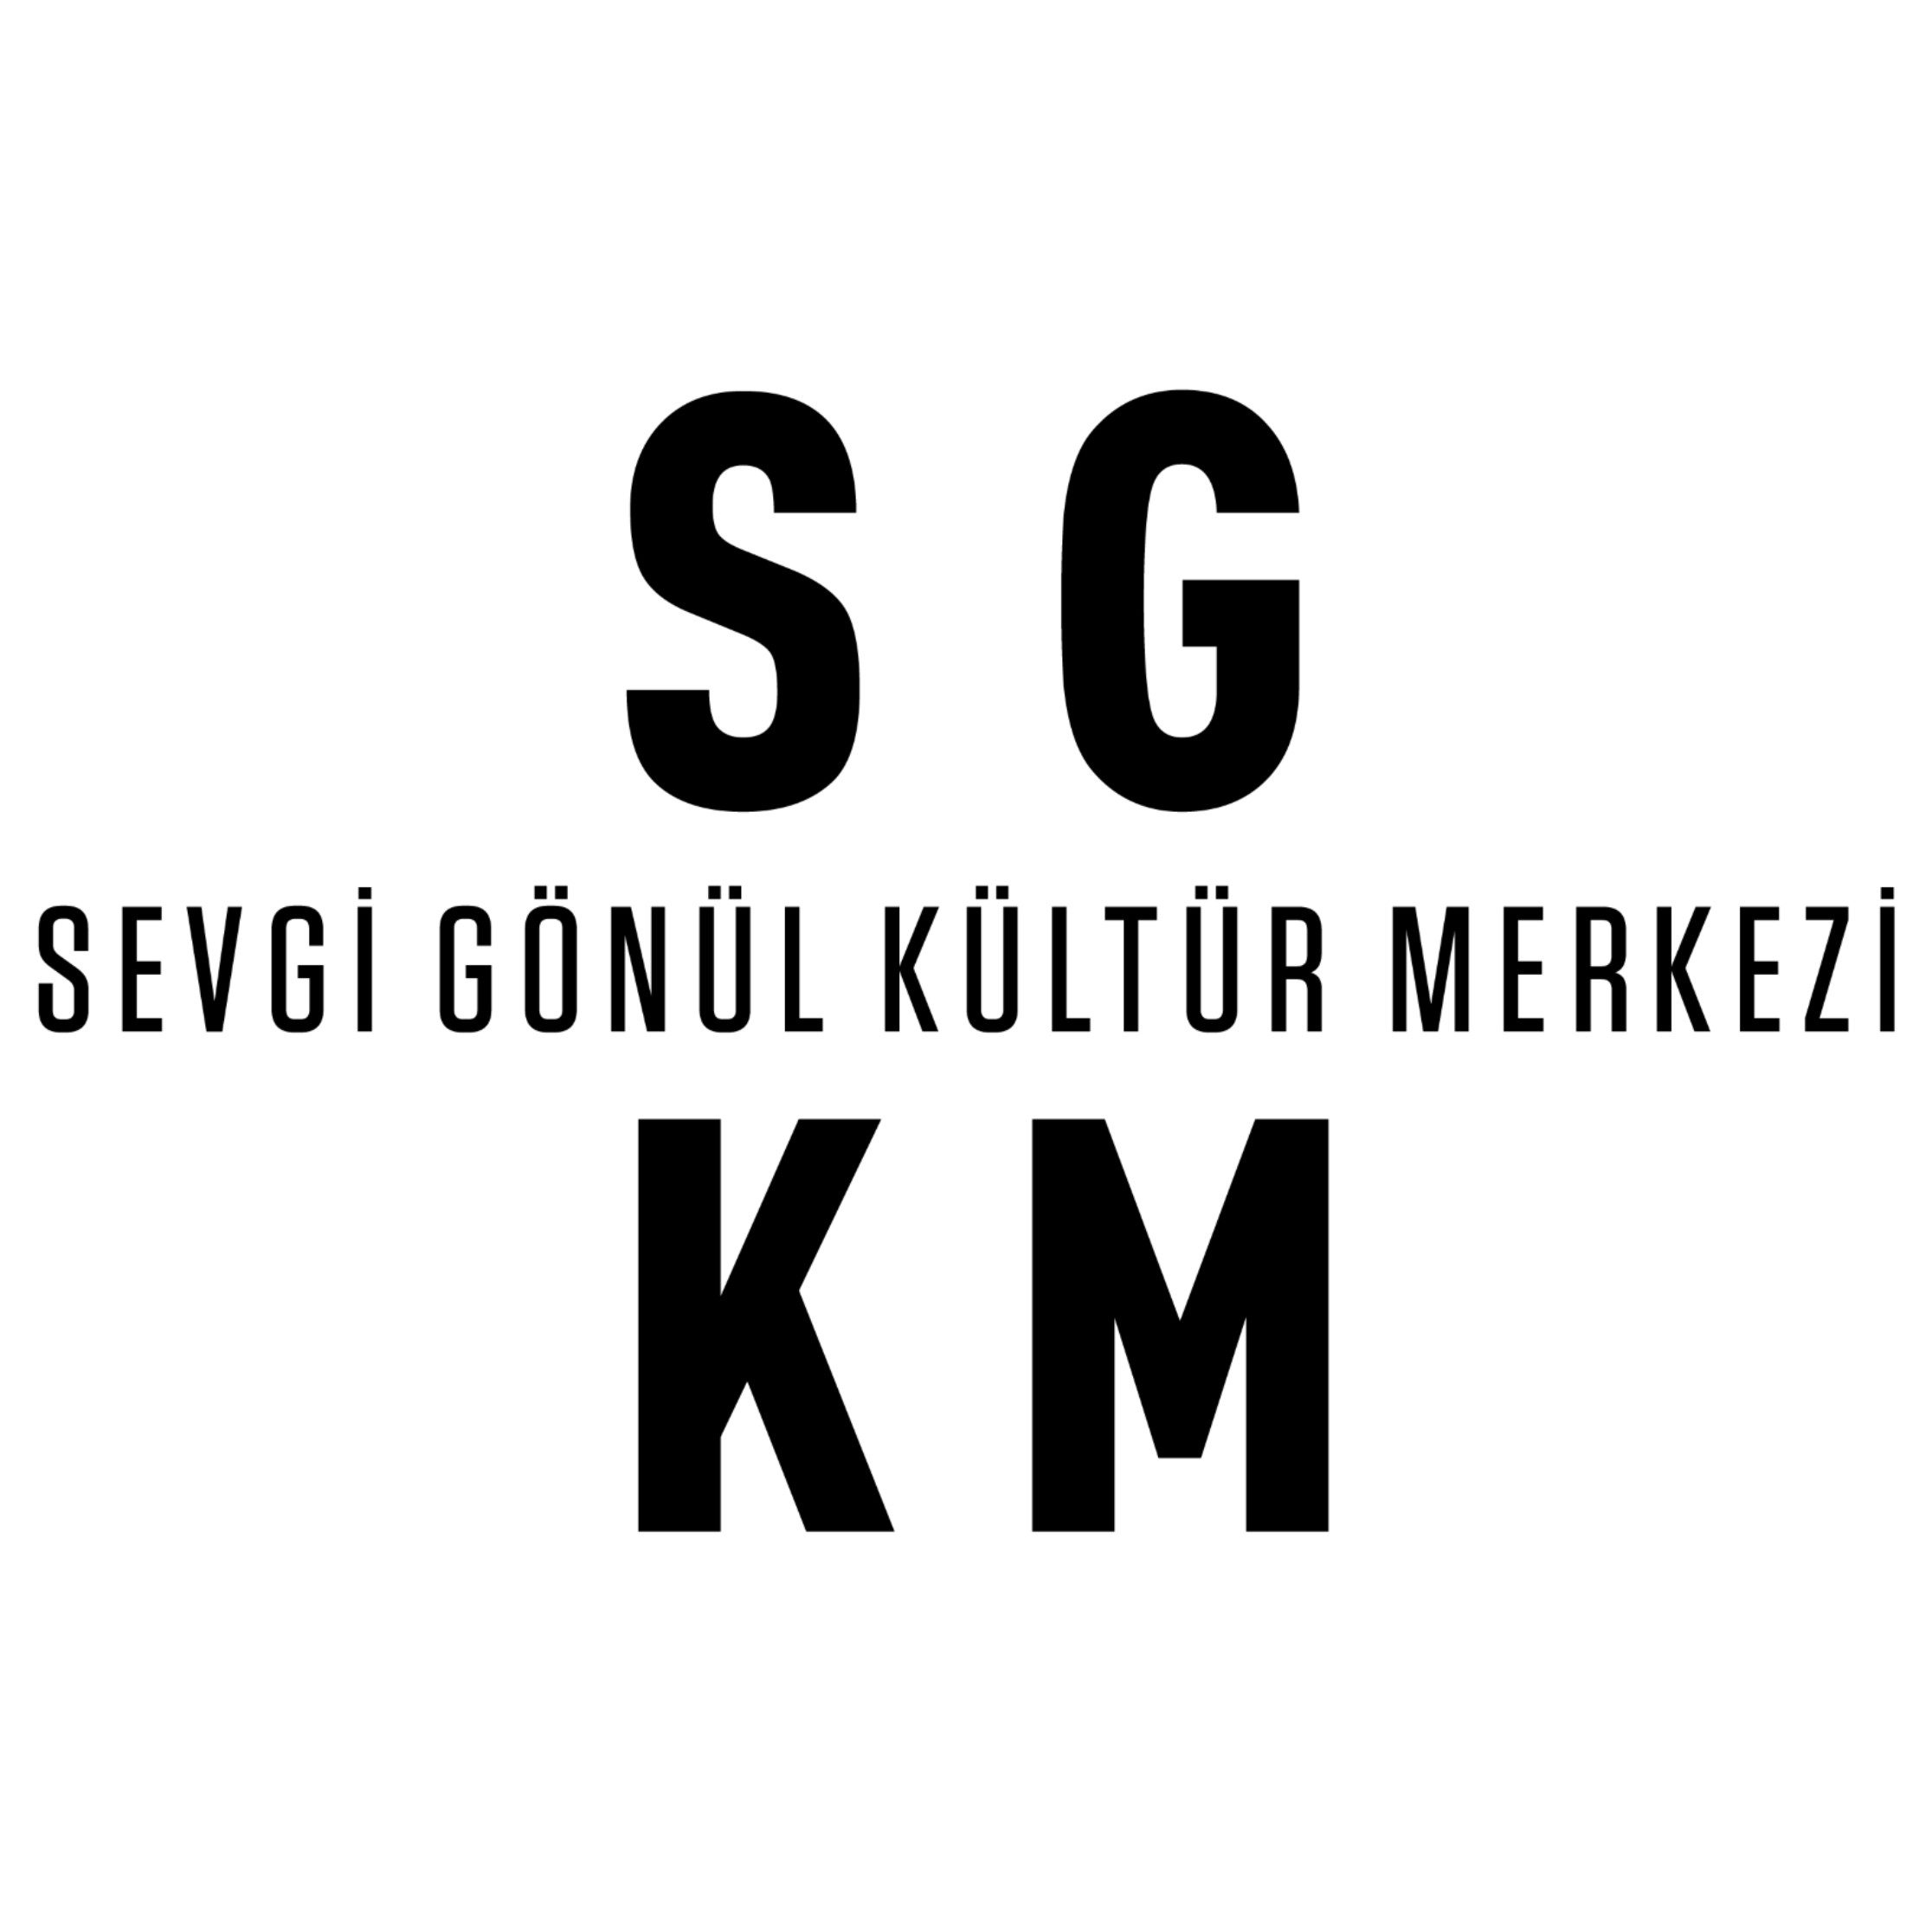 SGKM